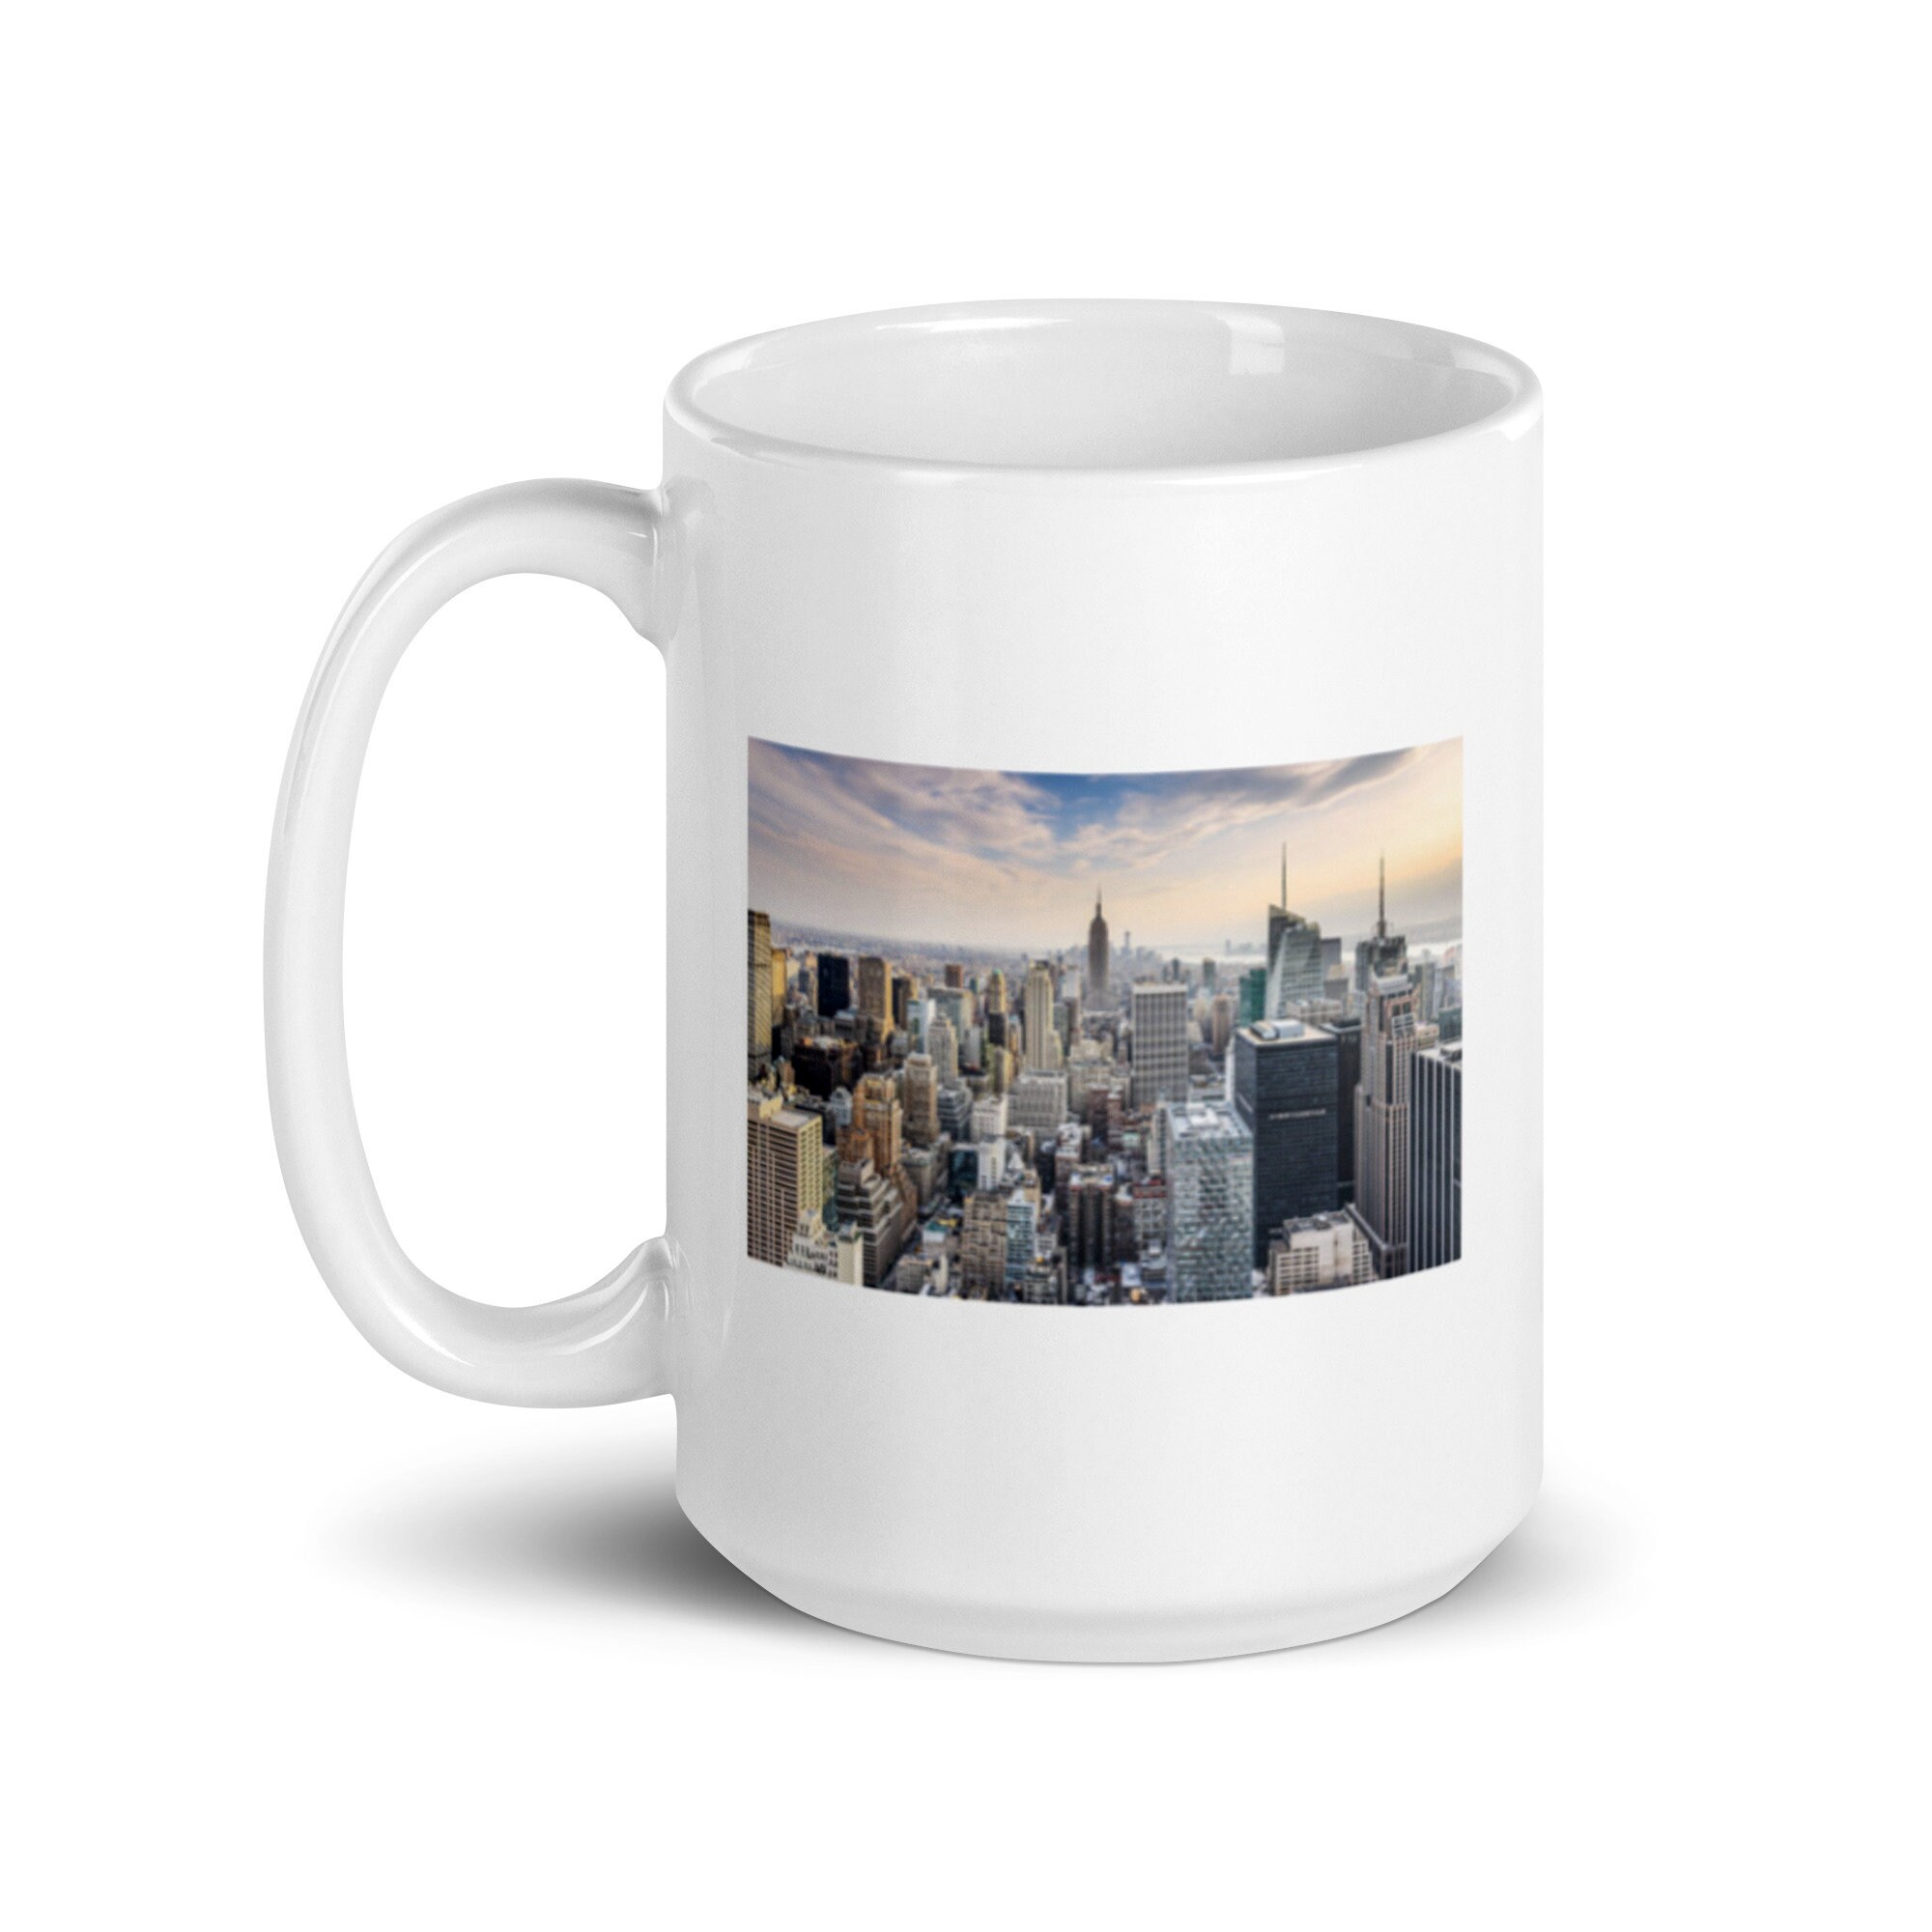 Discover New York City Mug, NYC Mug